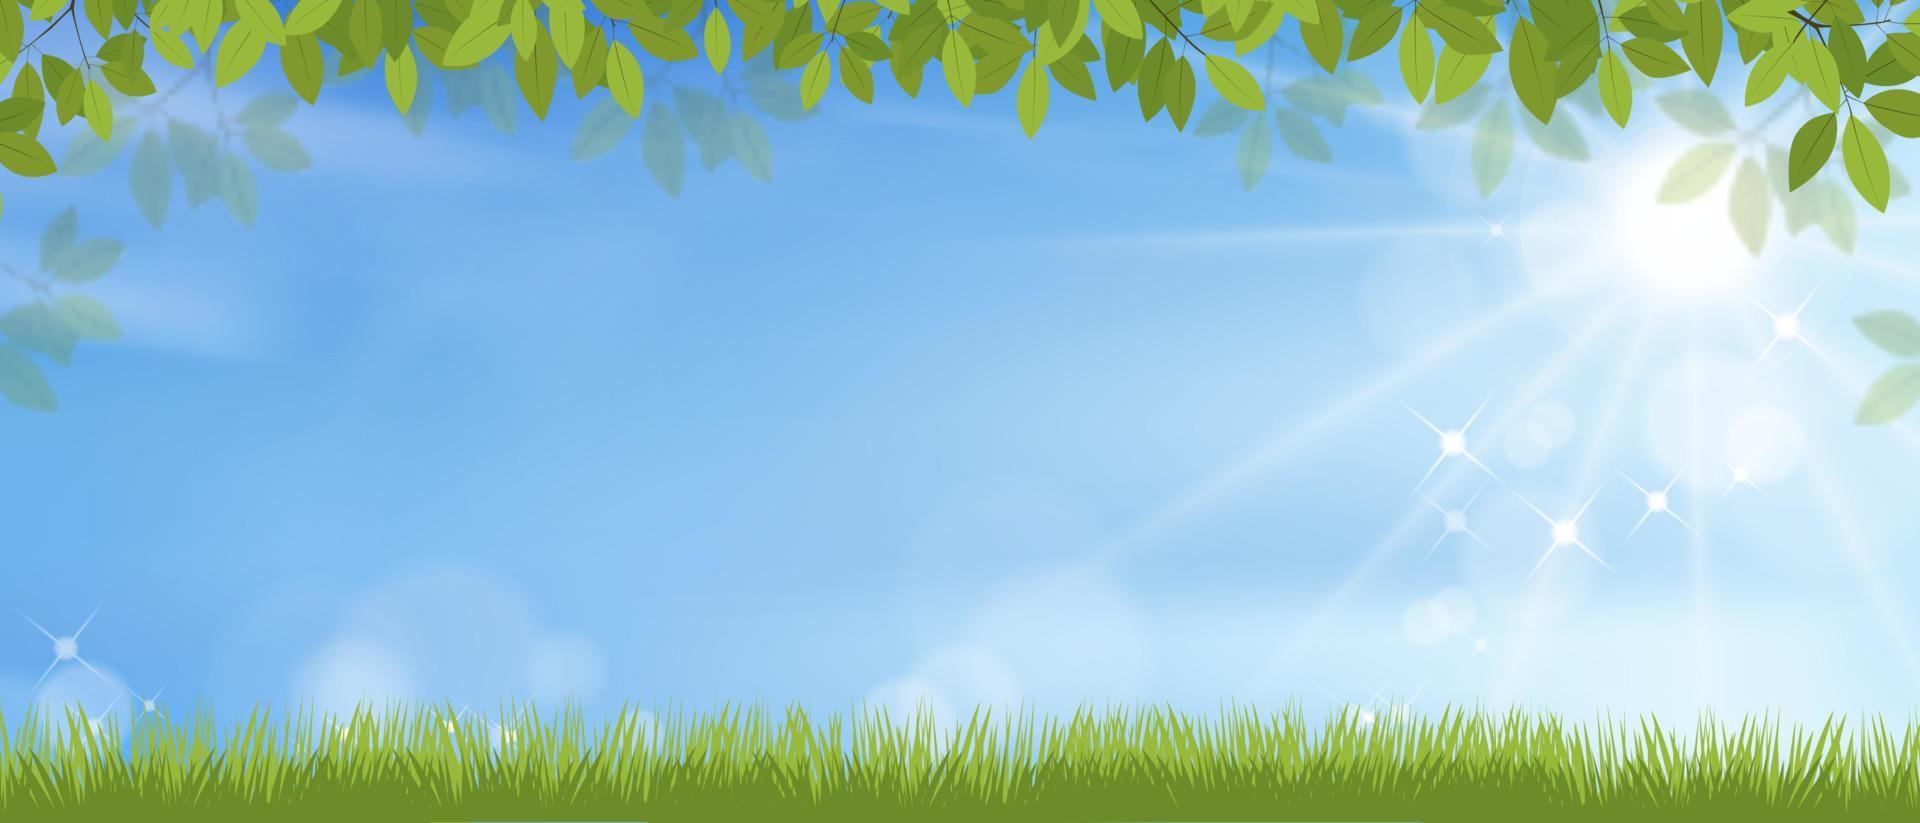 sfondo primaverile con paesaggio di campo in erba, cornice di foglie verdi su sfondo blu cielo, cartone animato vettoriale con spazio per la copia con il sole che splende al mattino, banner sullo sfondo per pasqua, primavera, vacanze estive